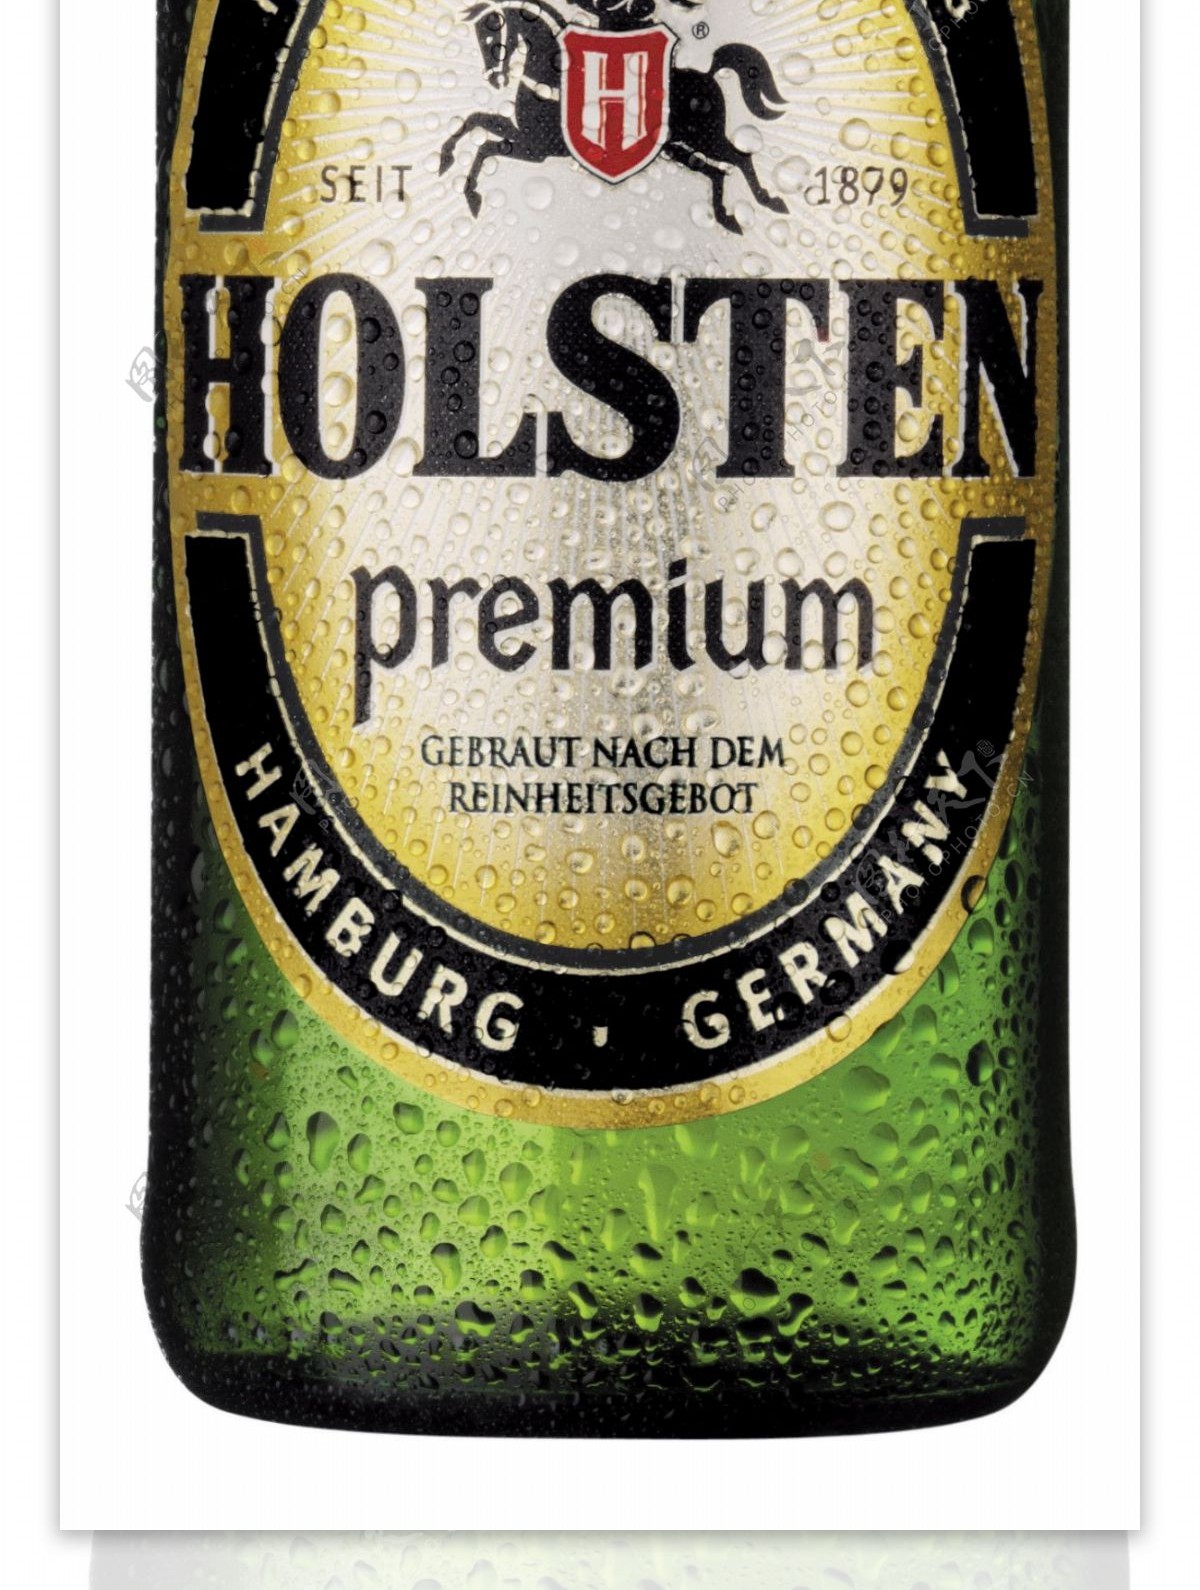 嘉士伯holsten啤酒图片